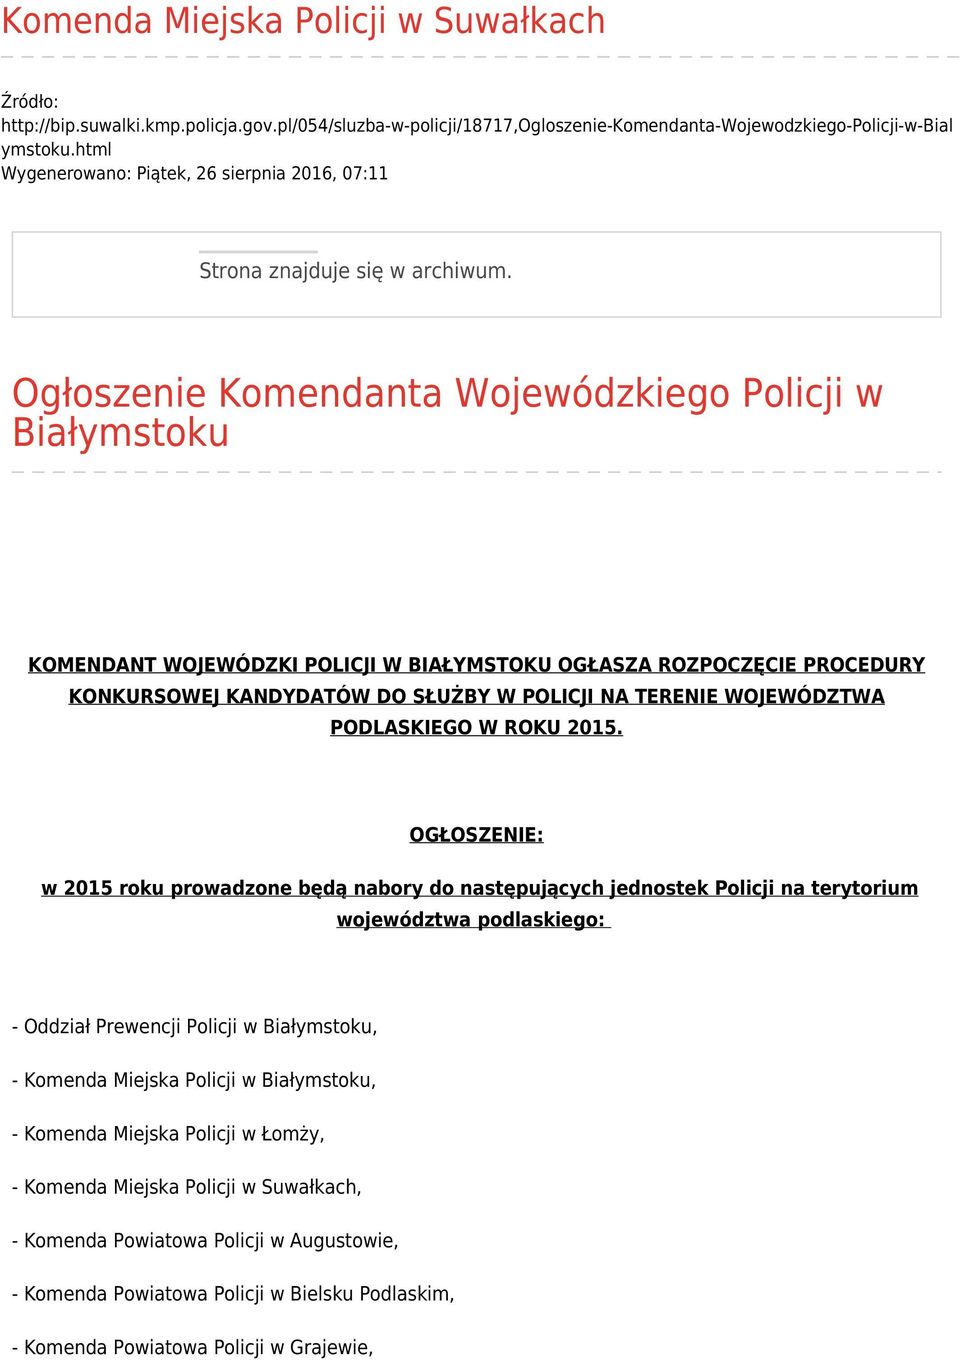 Ogłoszenie Komendanta Wojewódzkiego Policji w Białymstoku KOMENDANT WOJEWÓDZKI POLICJI W BIAŁYMSTOKU OGŁASZA ROZPOCZĘCIE PROCEDURY KONKURSOWEJ KANDYDATÓW DO SŁUŻBY W POLICJI NA TERENIE WOJEWÓDZTWA